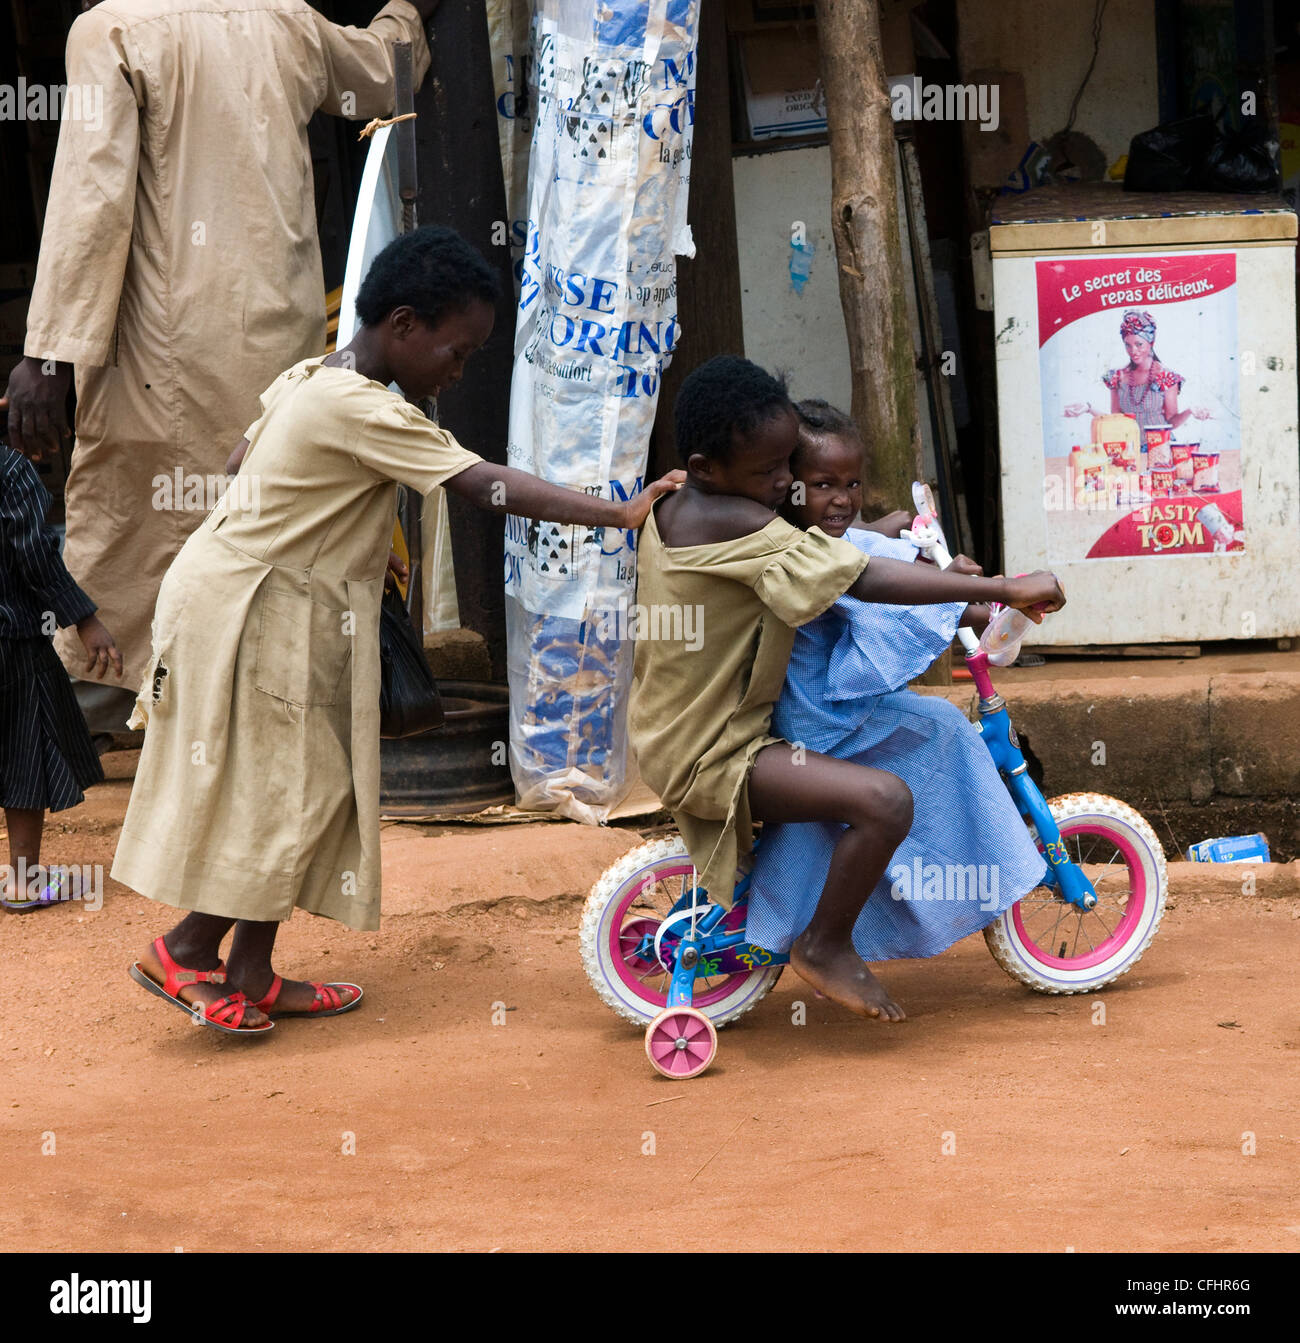 Niedliche togolesische Kinder mit ihrem Fahrrad Spielzeug spielen. Stockfoto